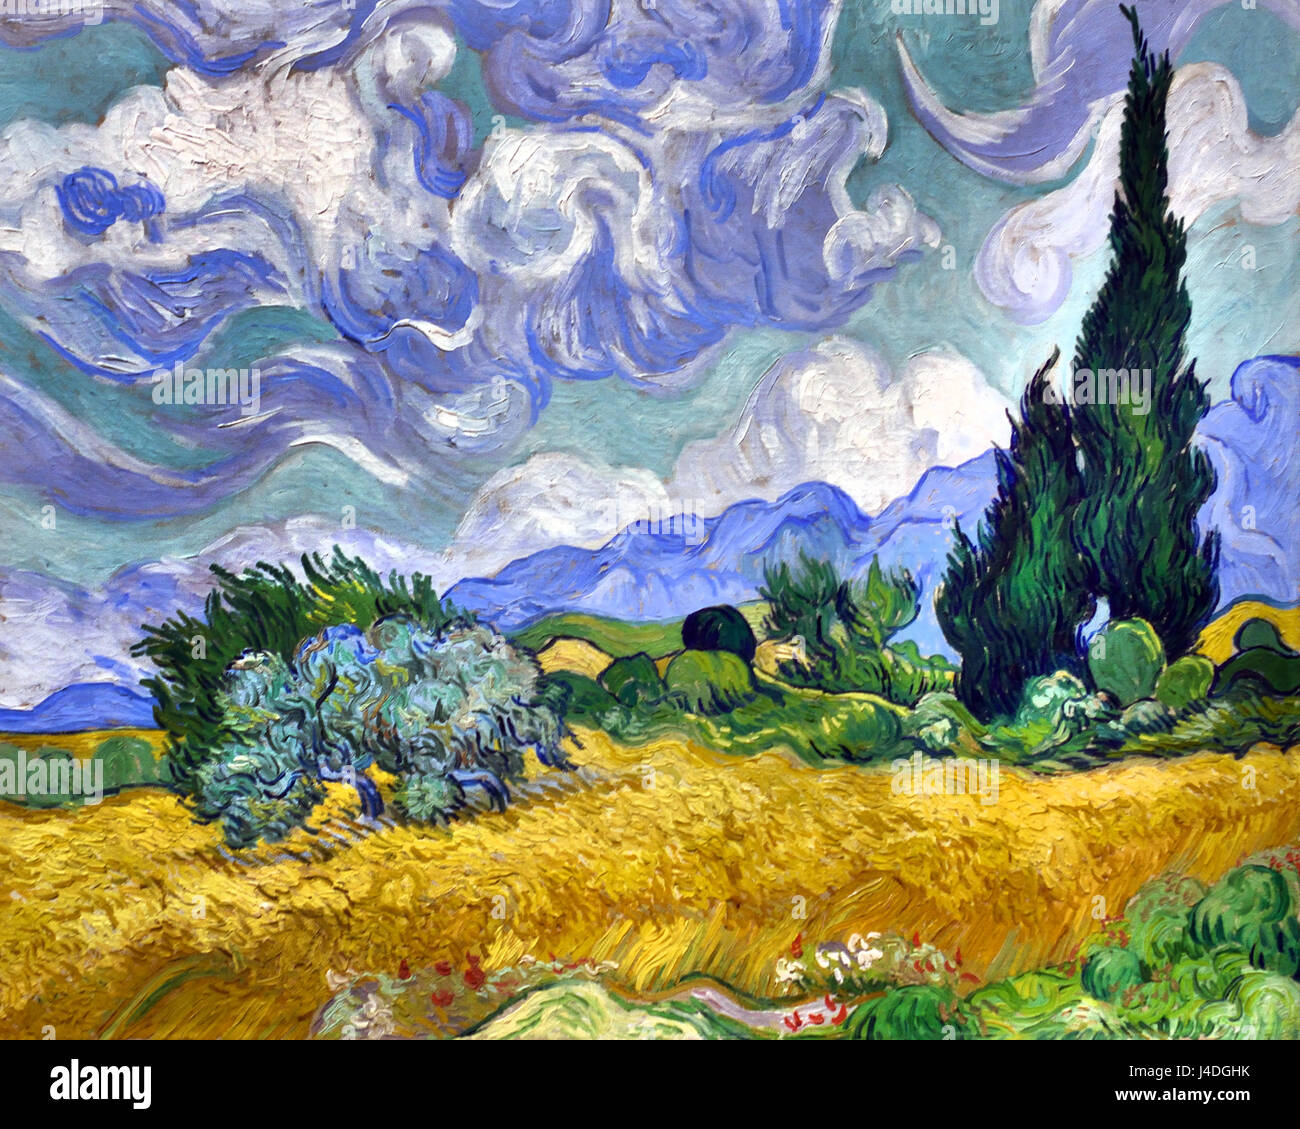 Ein Weizenfeld mit Zypressen 1889 Vincent van Gogh 1853-1890 Niederlande Niederlande Stockfoto